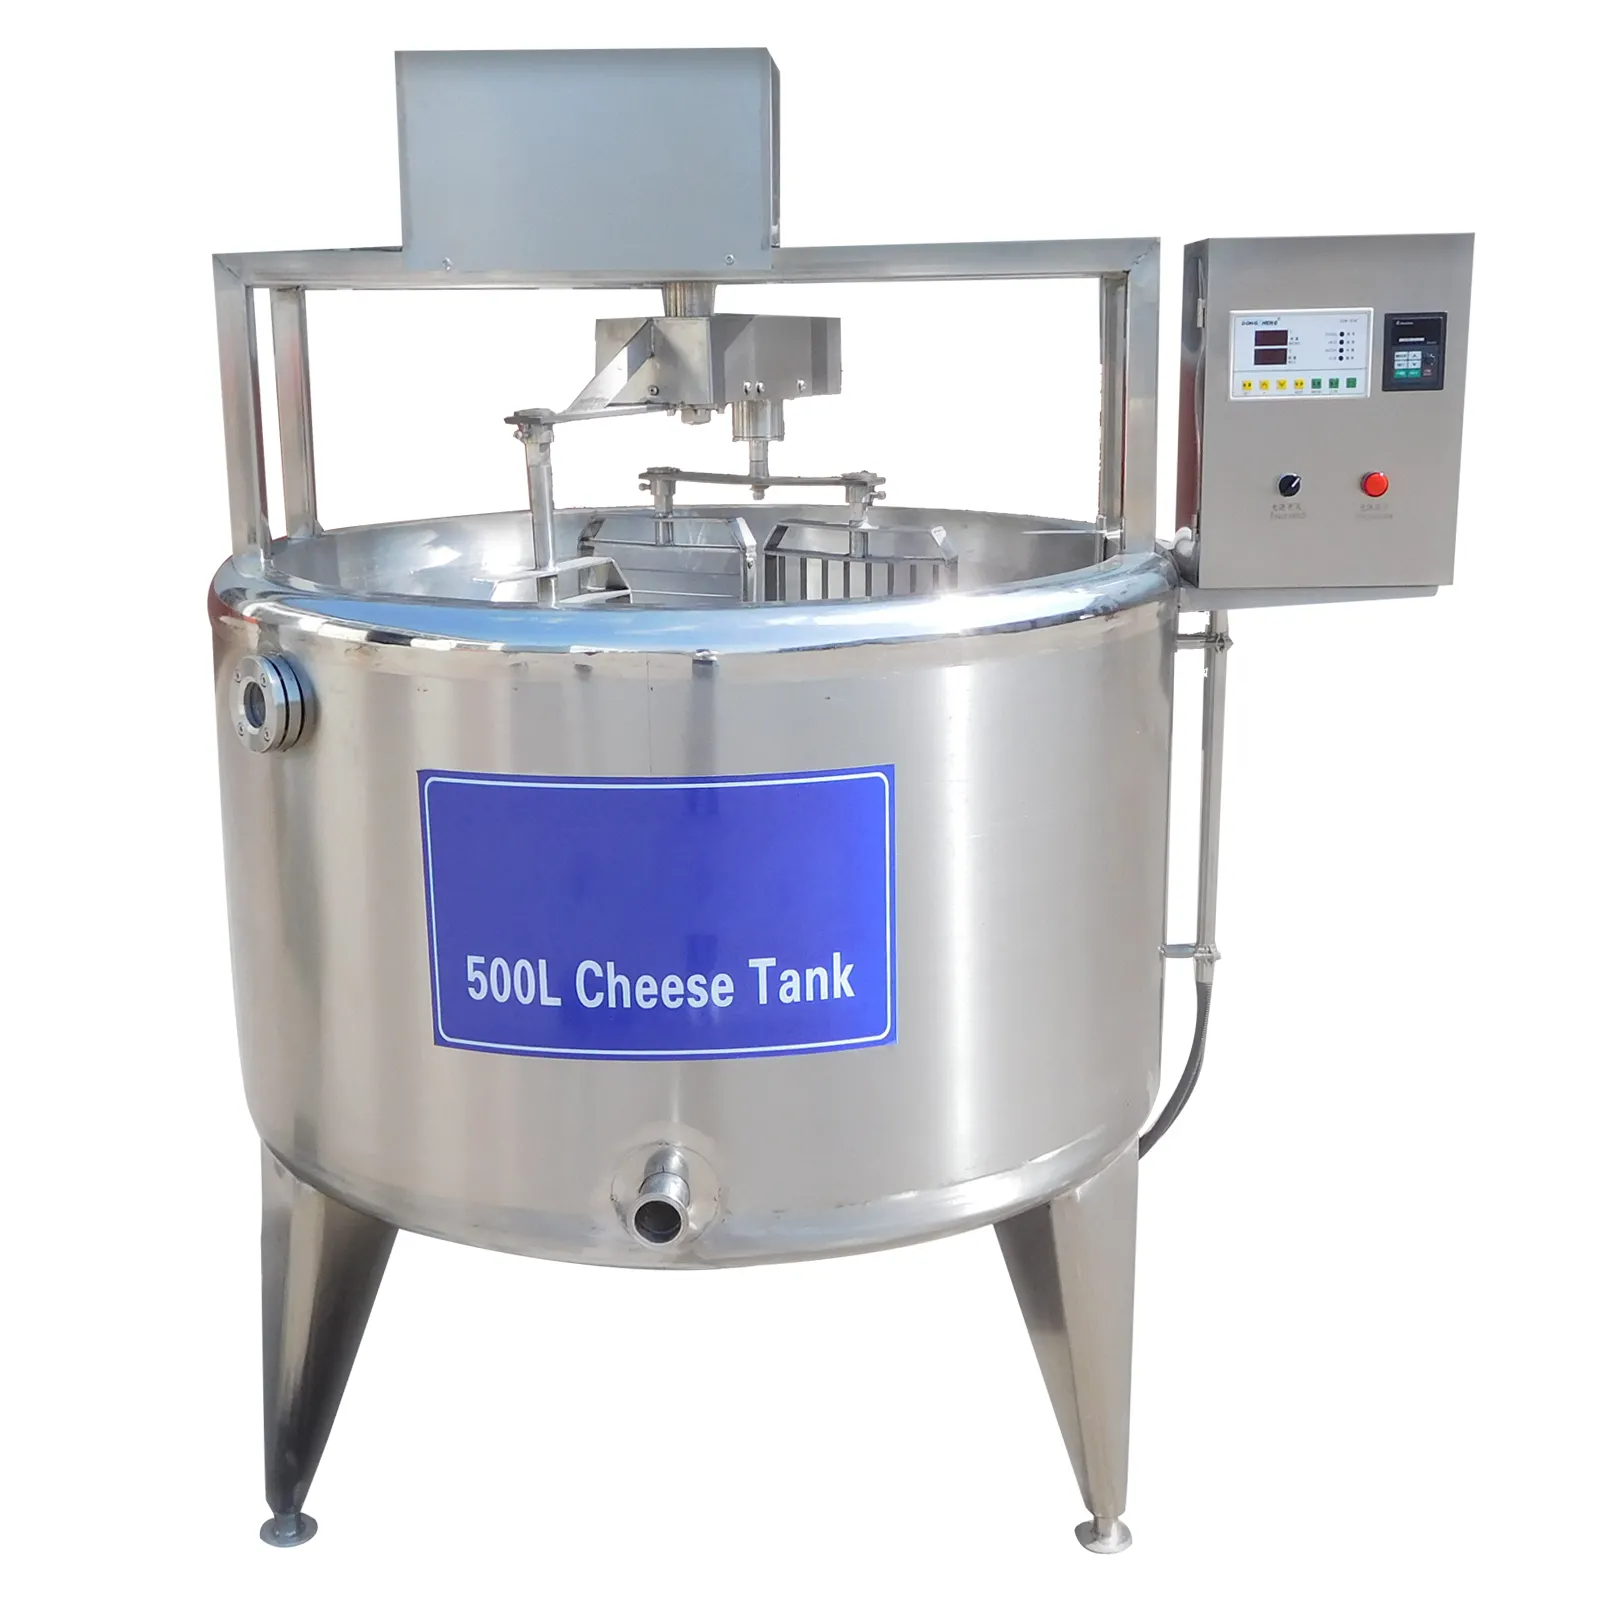 공장 우유/요구르트/치즈 가공 공장, 저온 살균제 우유 제조 기계